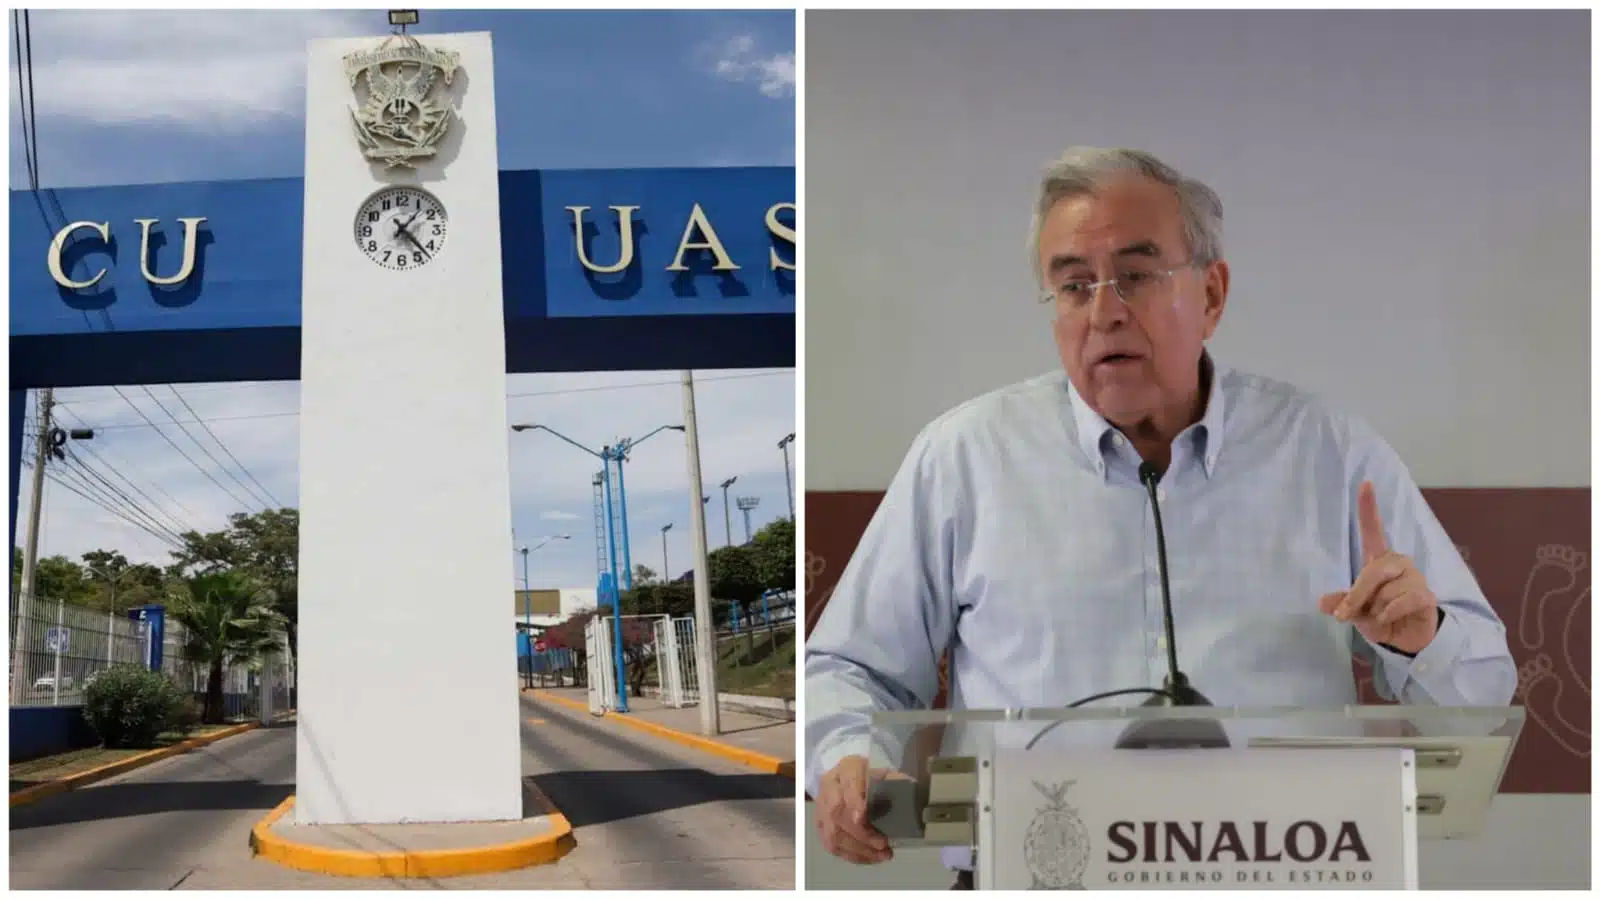 La UAS compró 18 millones de tortillas en año de pandemia y proveedores no se dedican al ramo: Rocha